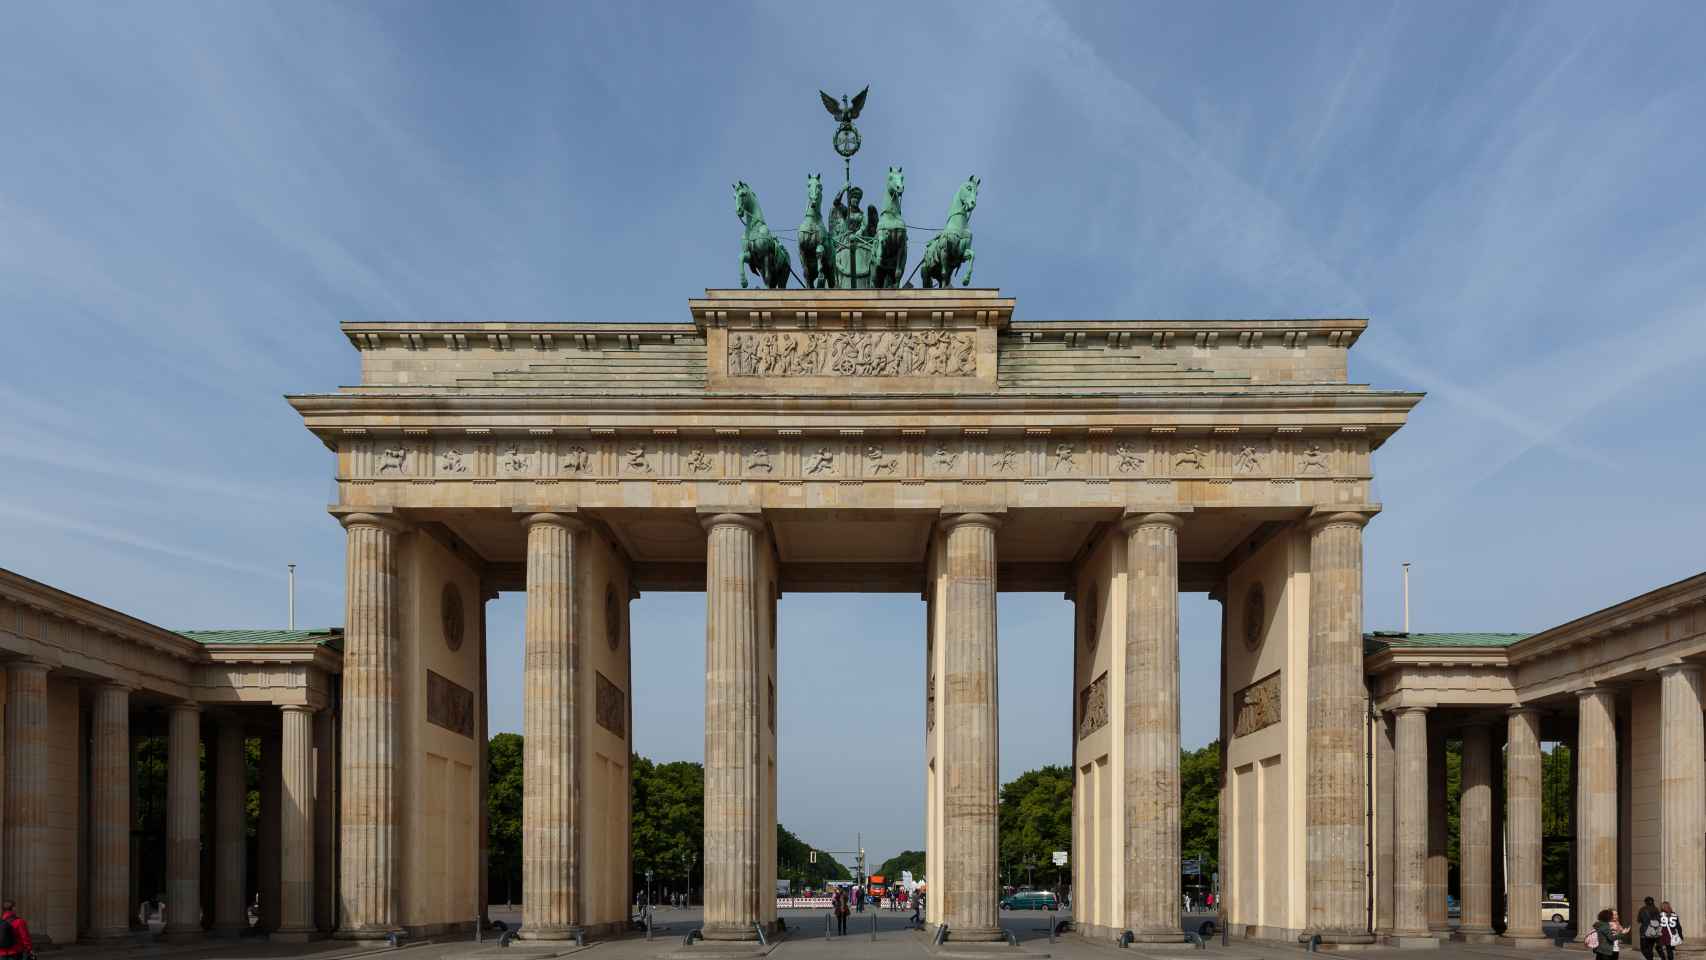 Puerta de Brandenburgo, símbolo de la división y reunificación alemana